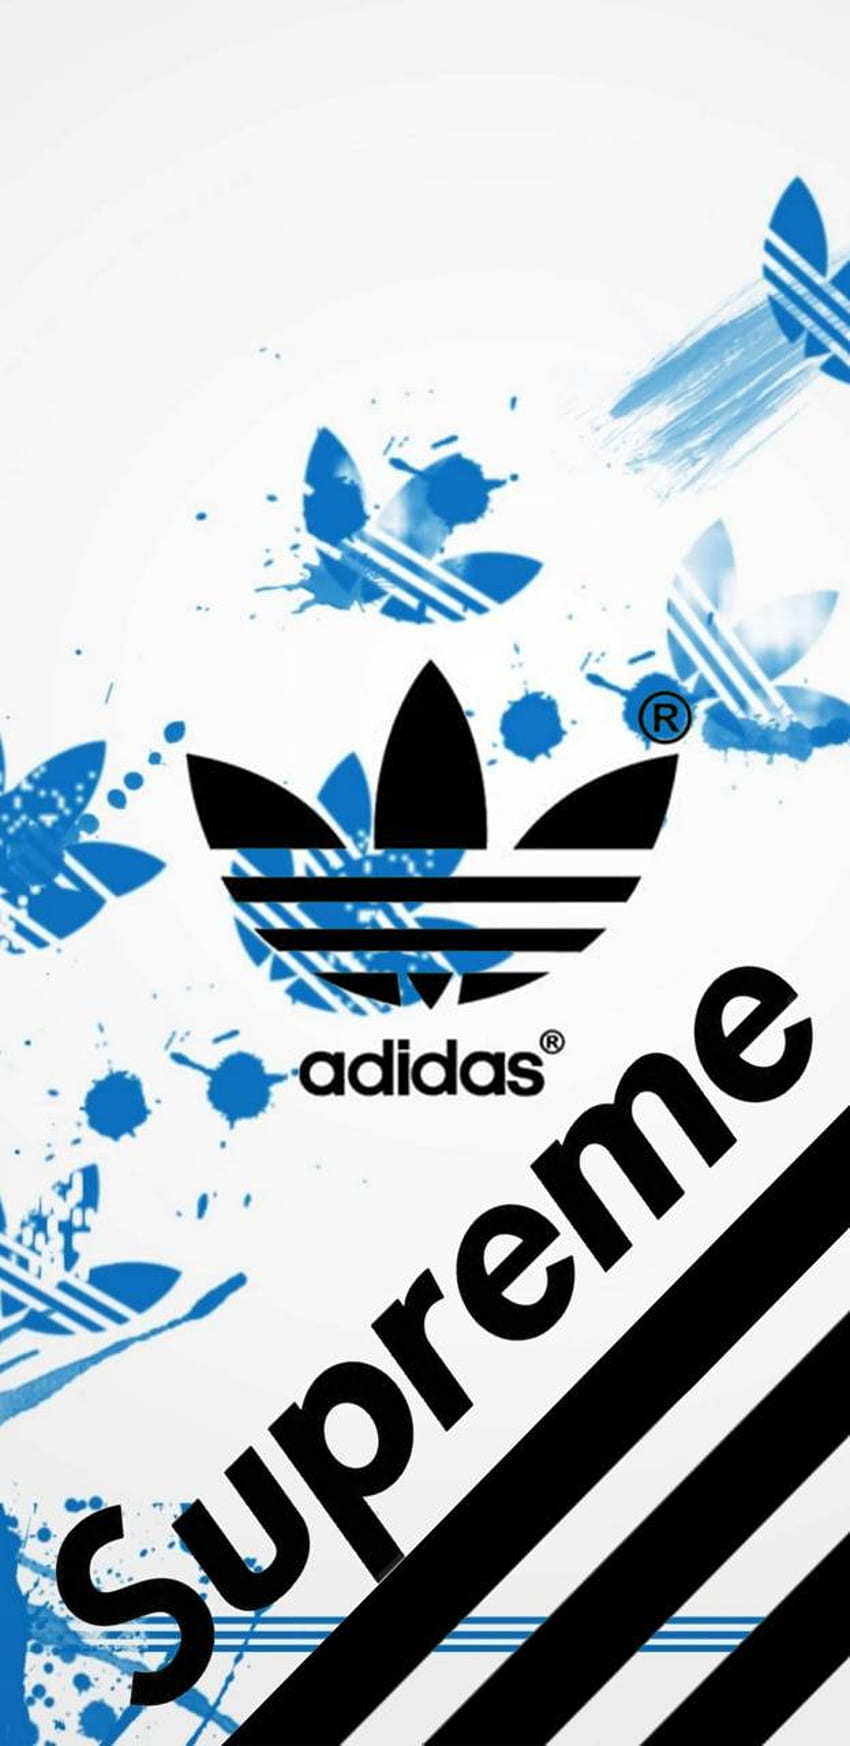 Adidas Supreme, Adidas keren wallpaper ponsel HD